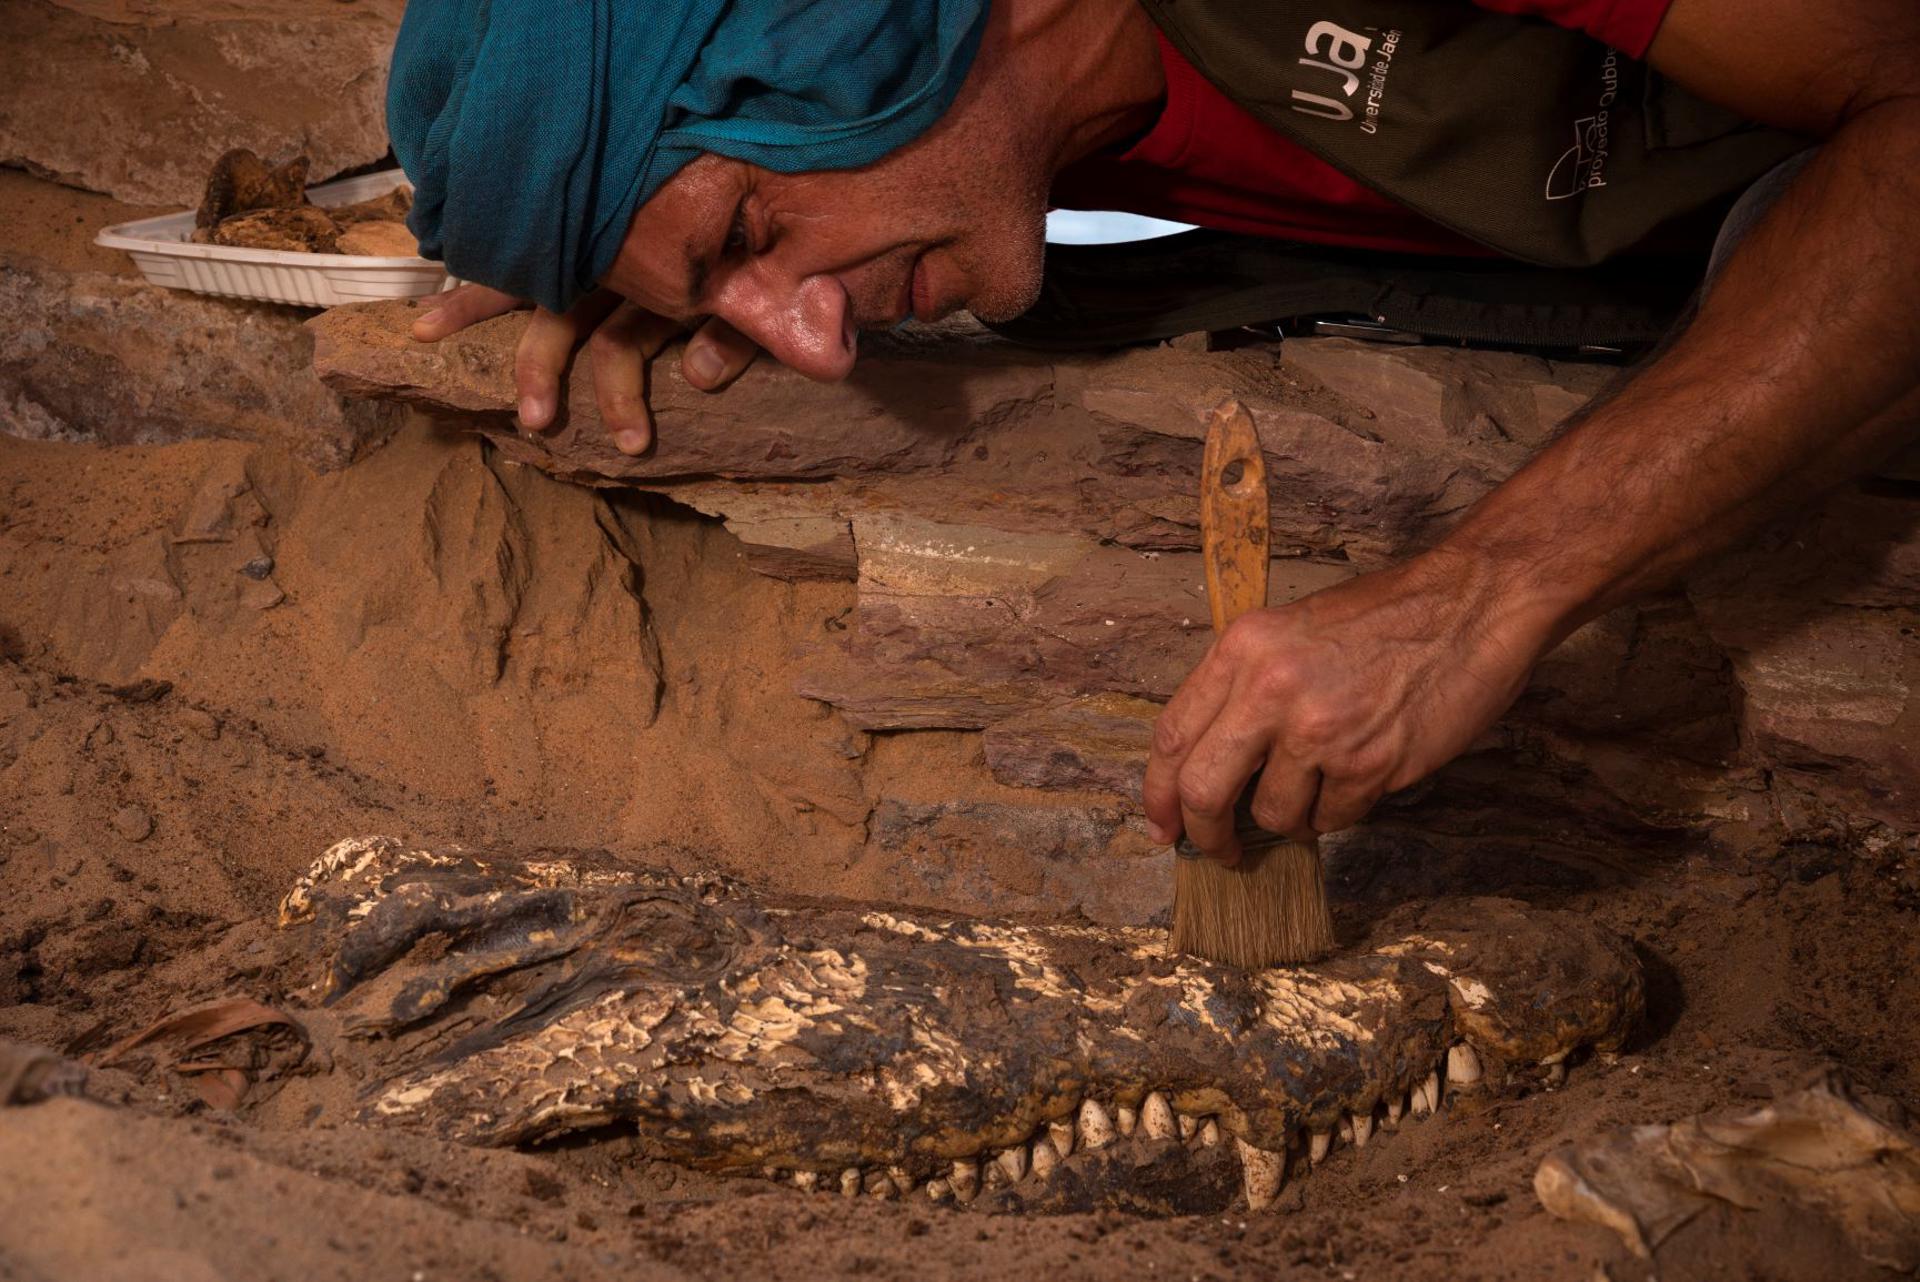 Sorpresa en una pequeña tumba egipcia: hallan diez momias de cocodrilos